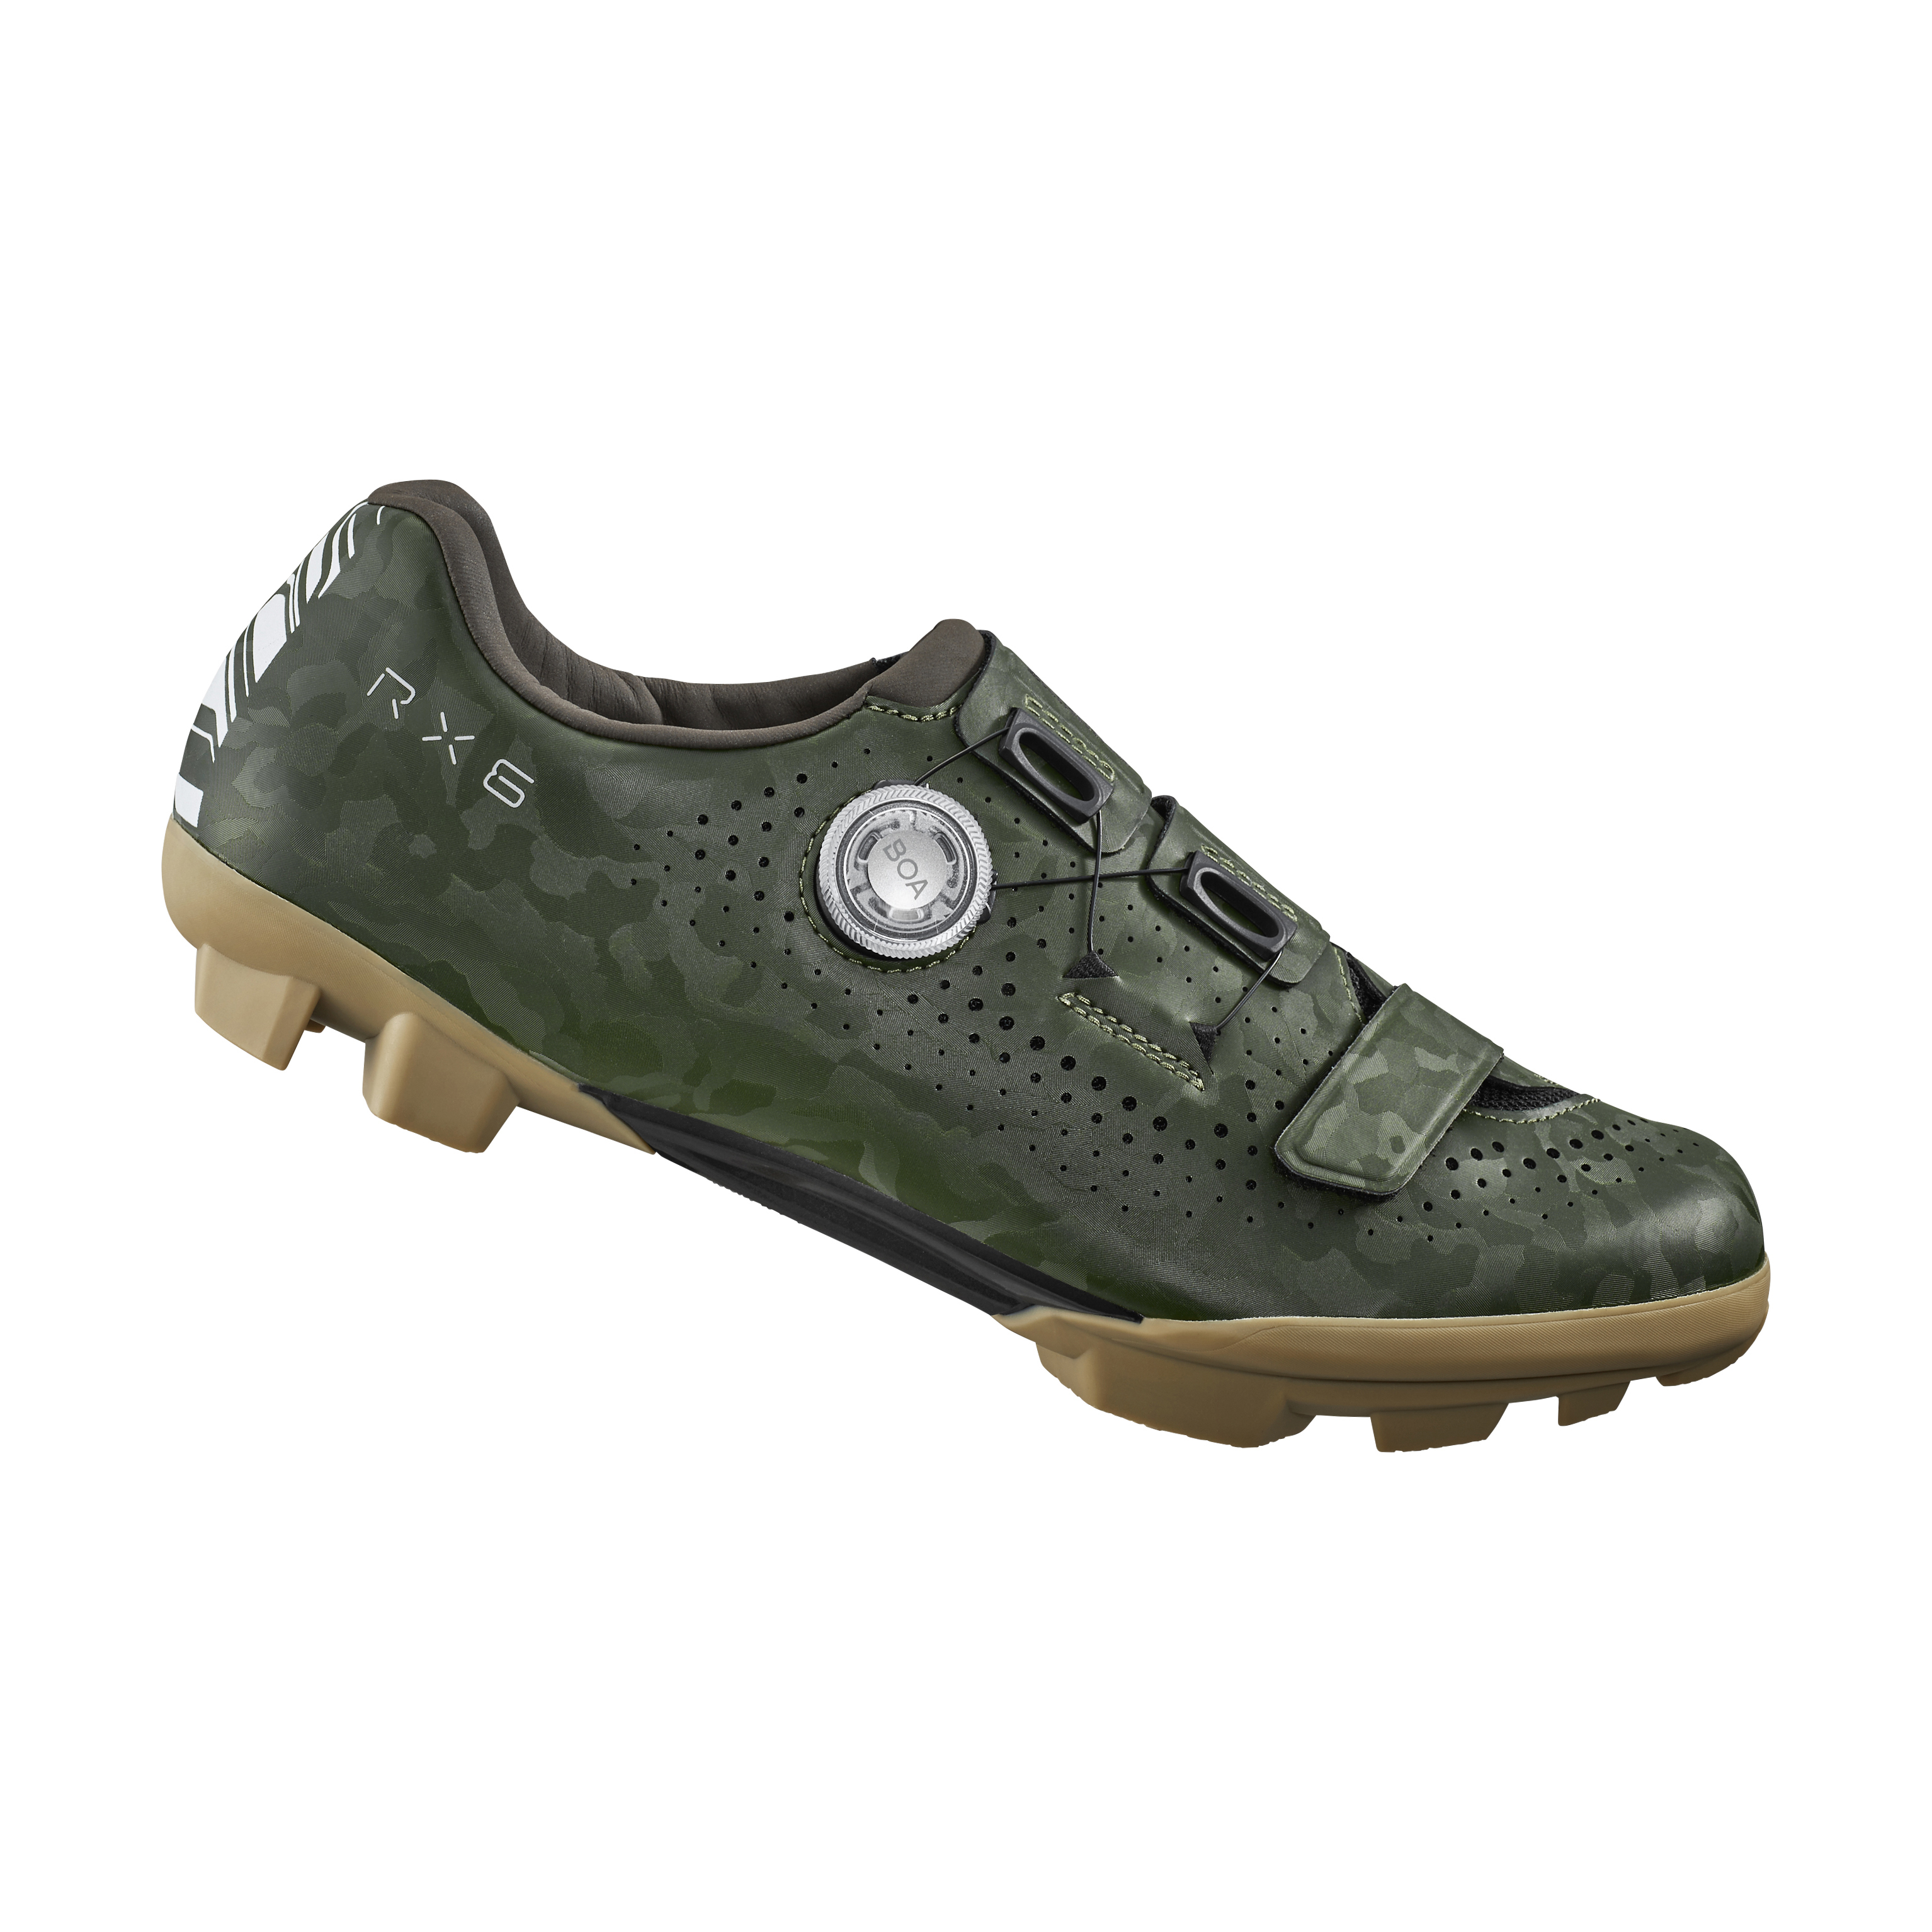 SHIMANO gravel obuv SH-RX600, pánská, zelená, 47, WIDE